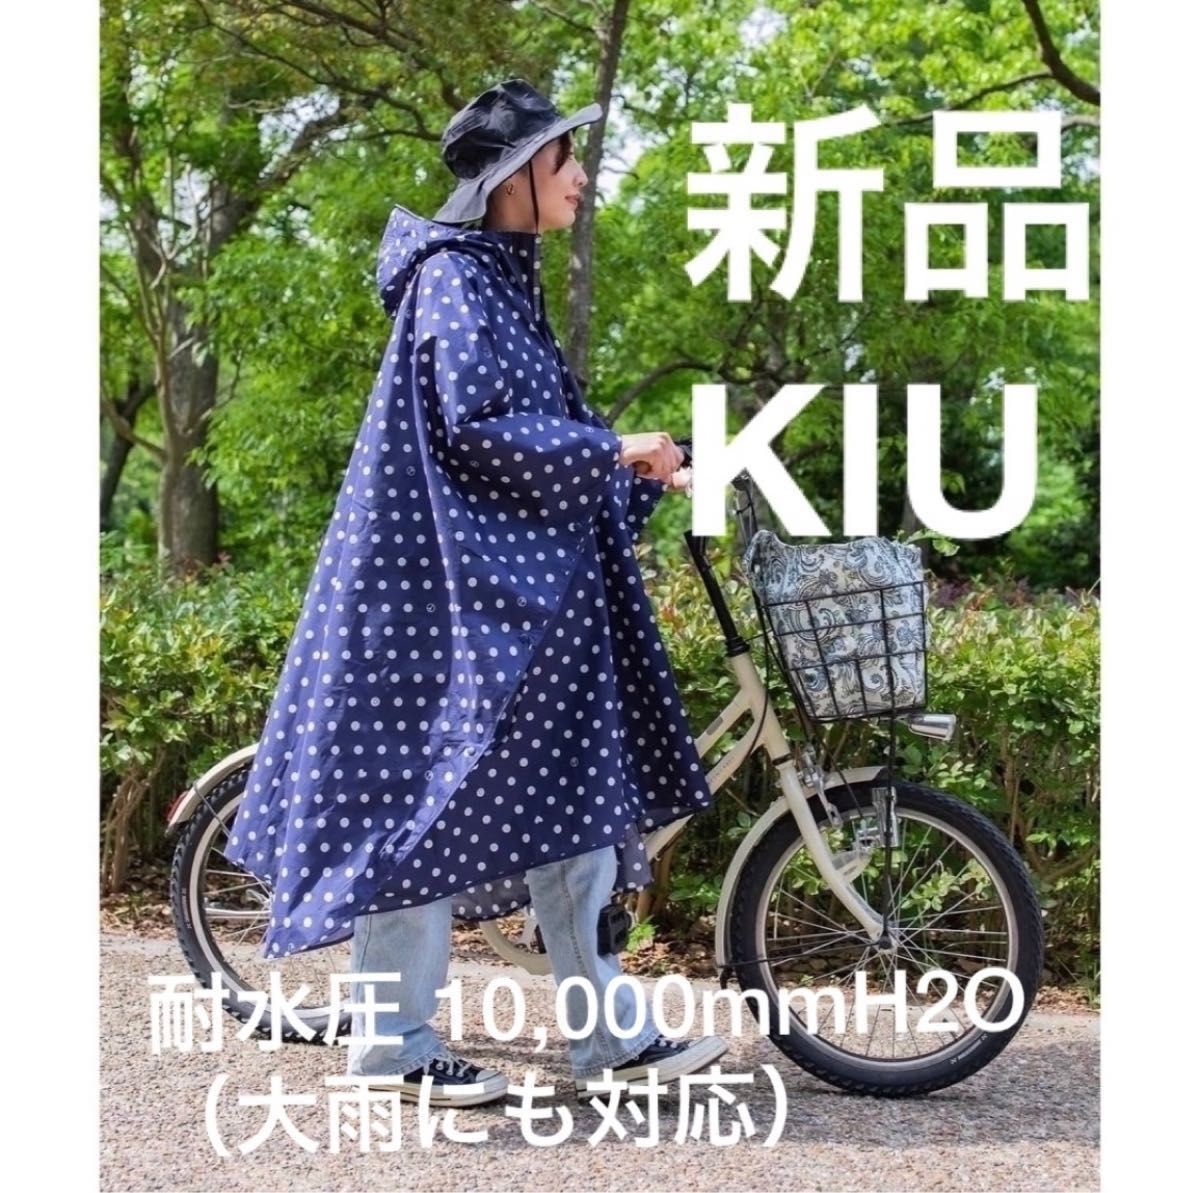 KiU 大雨対応 ポンチョ 自転車 はっ水 防水 収納袋付き ユニセックス